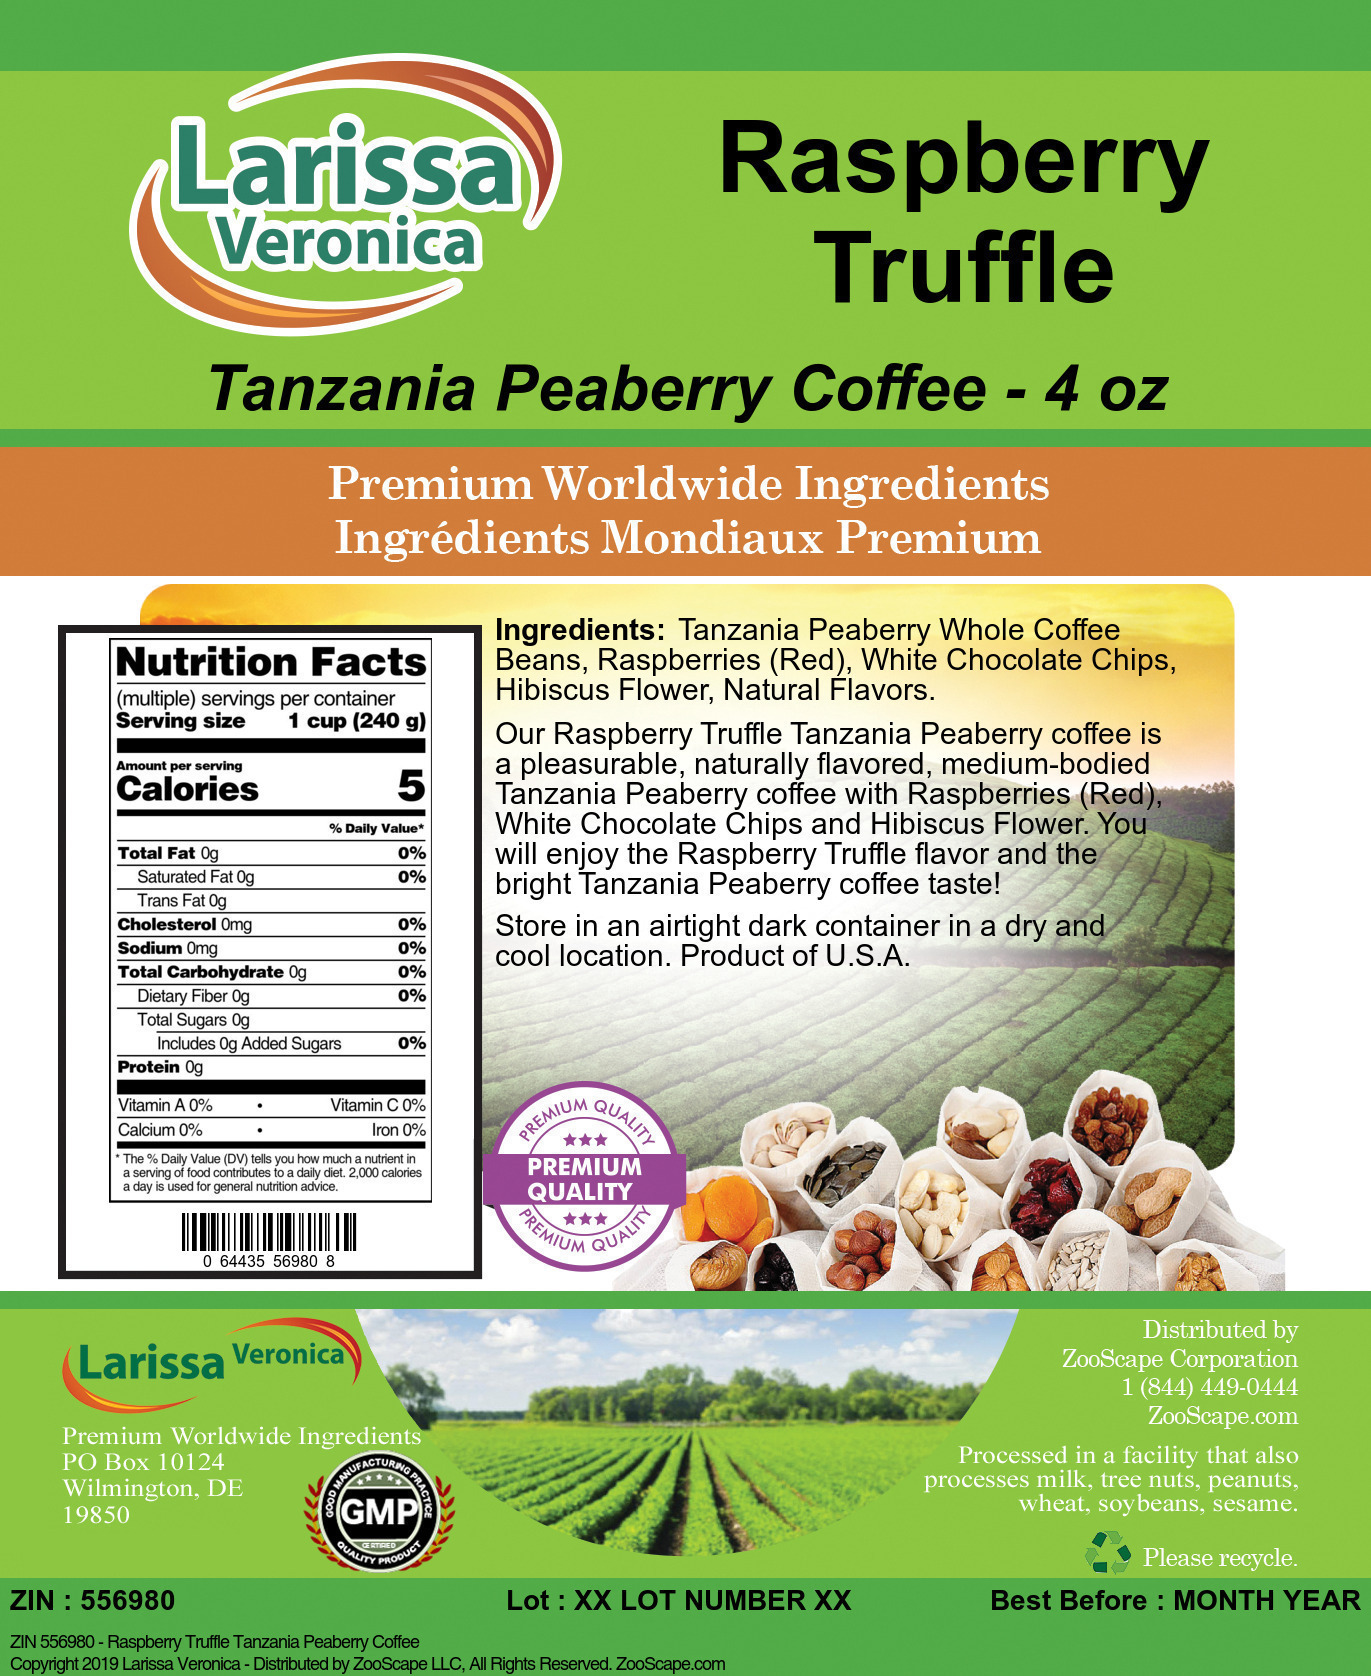 Raspberry Truffle Tanzania Peaberry Coffee - Label